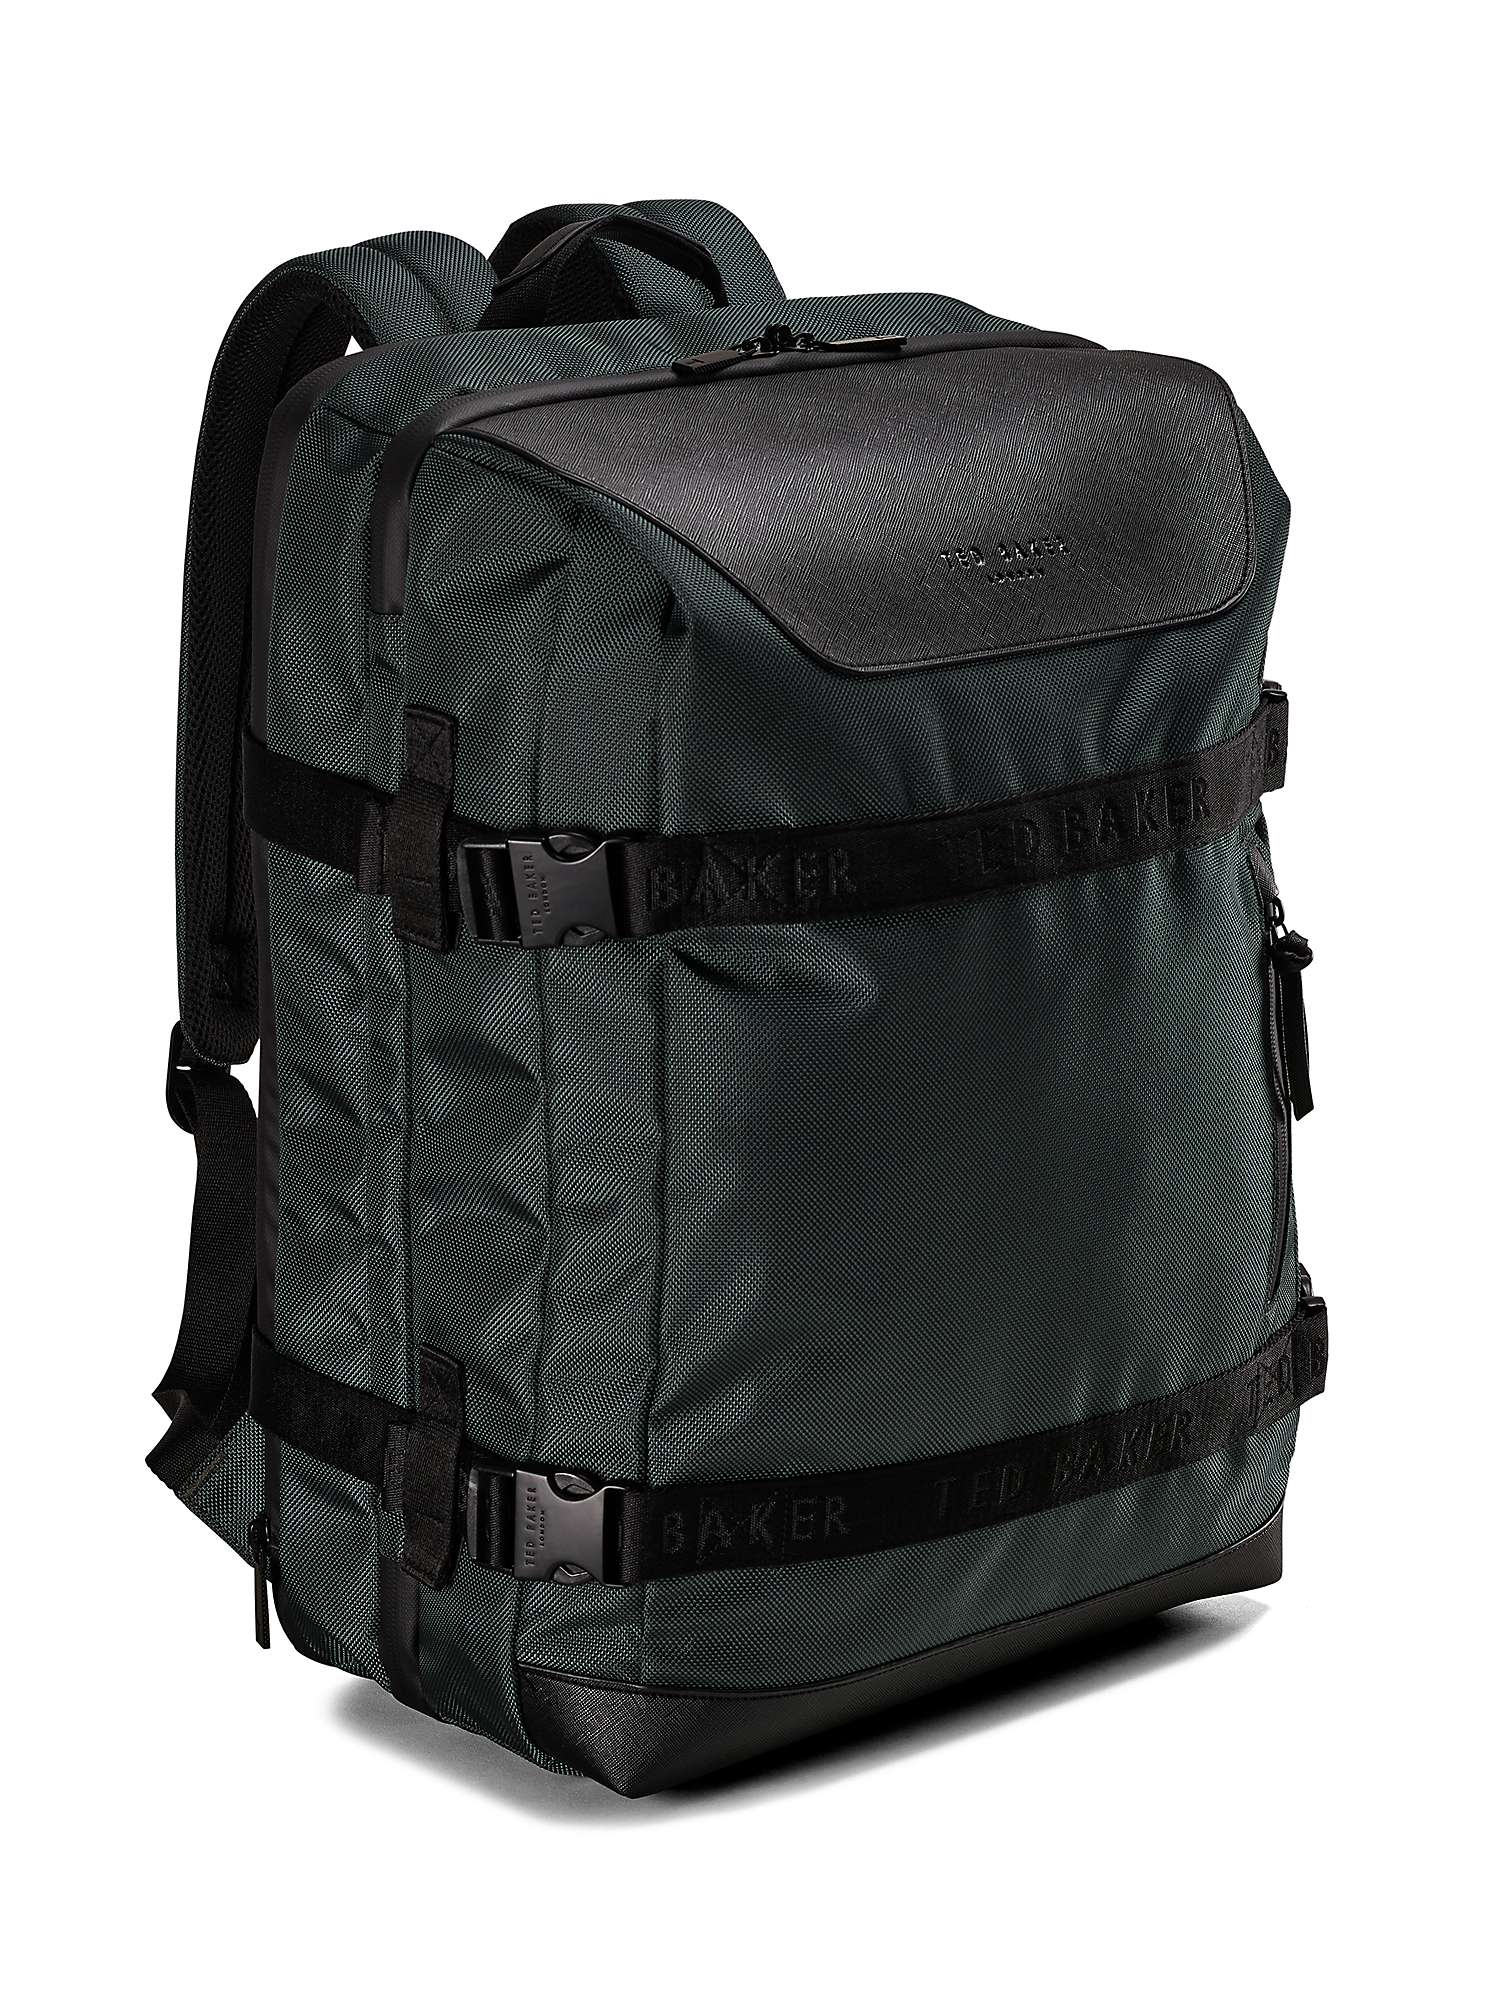 Buy Ted Baker Nomad Backpack, 34L, Pewter Grey Online at johnlewis.com